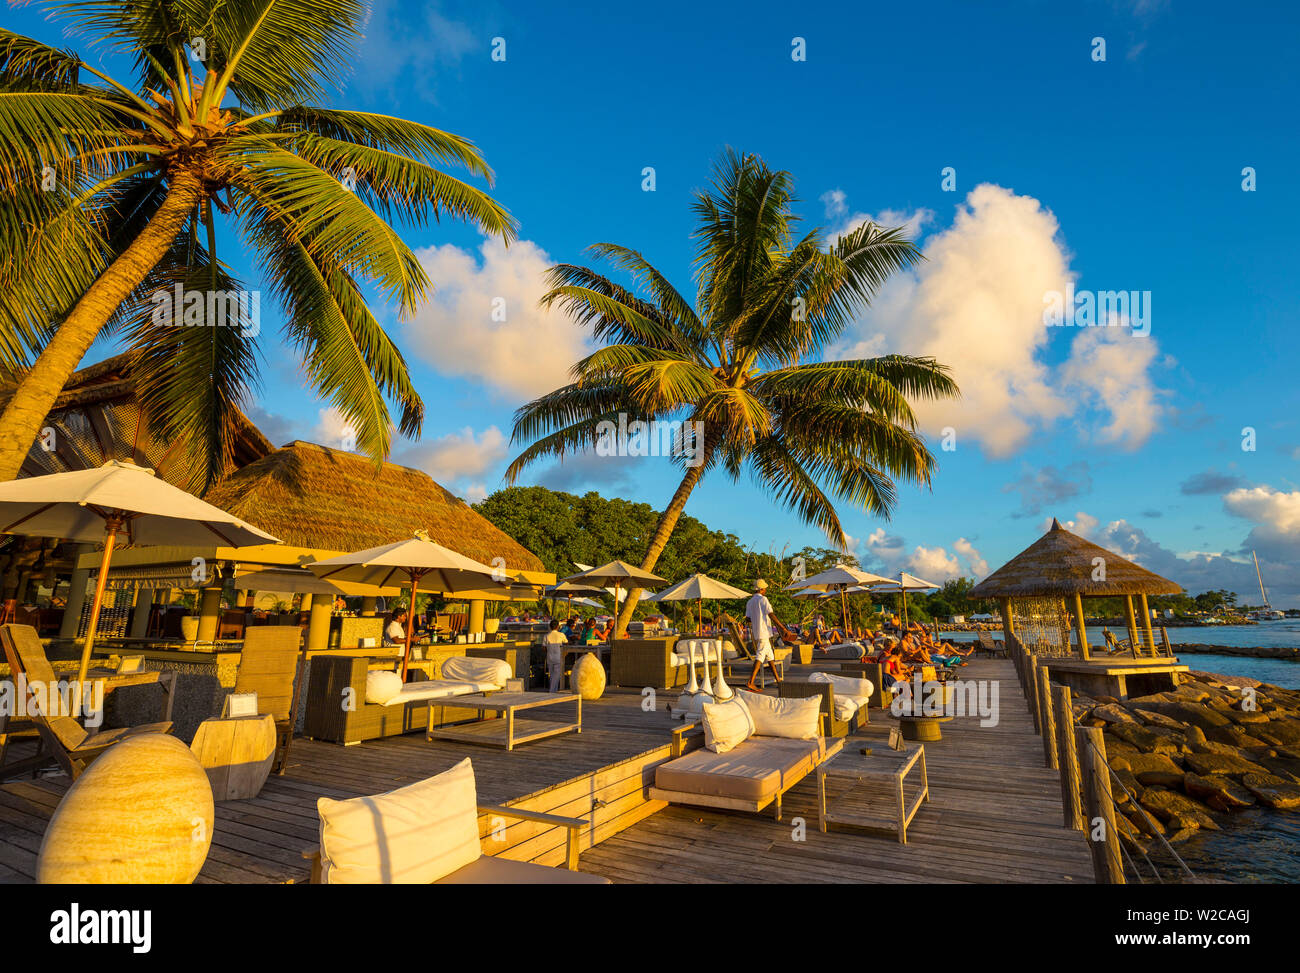 Le Domaine de l'Orangeraie hotel, La Digue, Seychelles Stock Photo